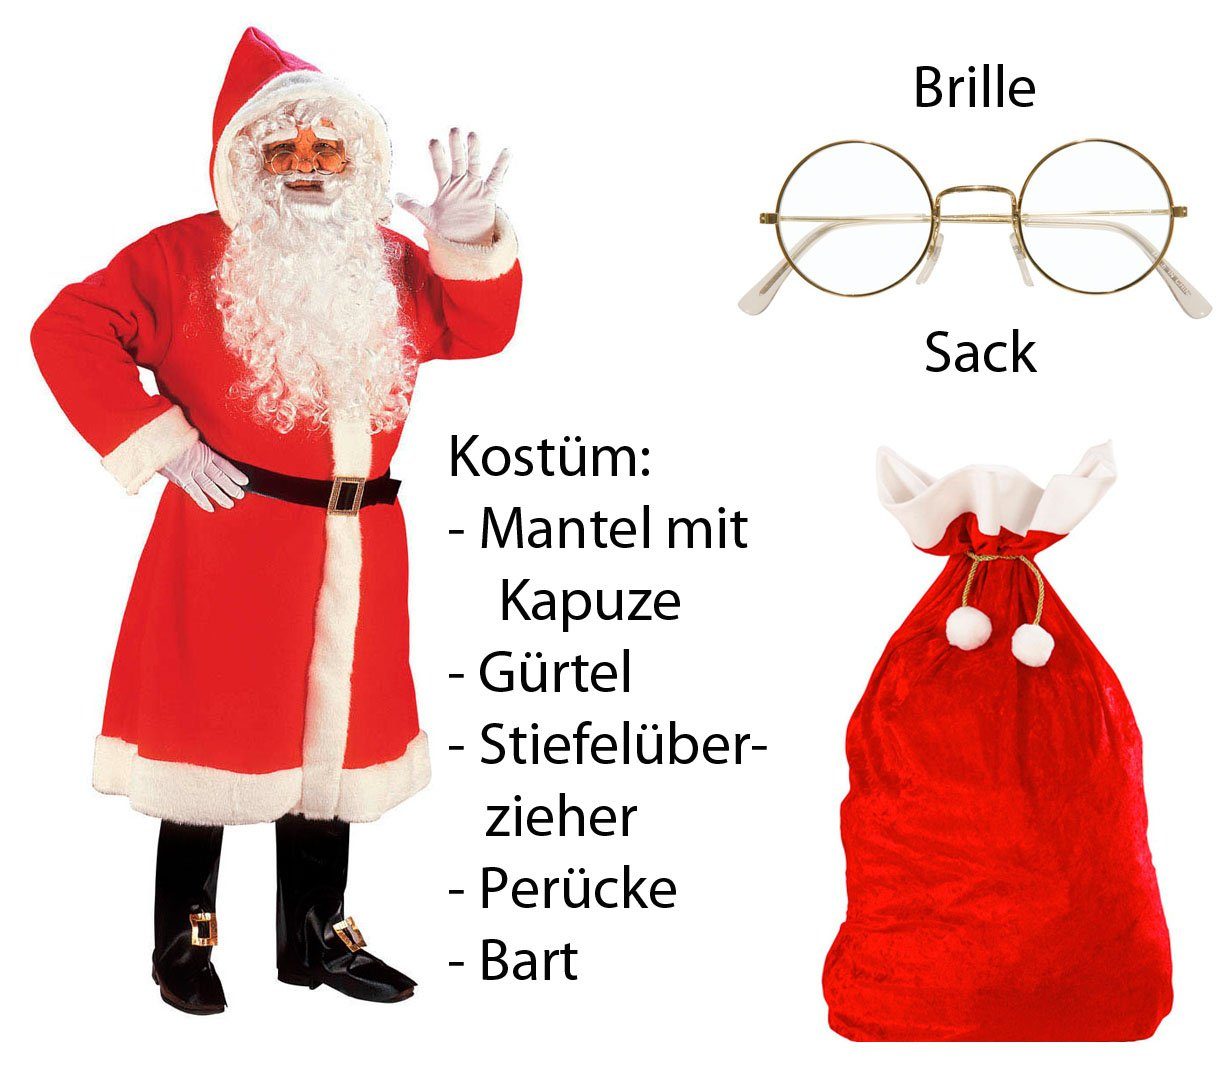 Scherzwelt Weihnachtsmann Luxus Weihnachtmann Mantel mit Perücke, Bart, ...M/L - Set mit Sack + Brille, Weihnachtsmannkostüm, Weihnachtskostüm, Weihnachtsmann